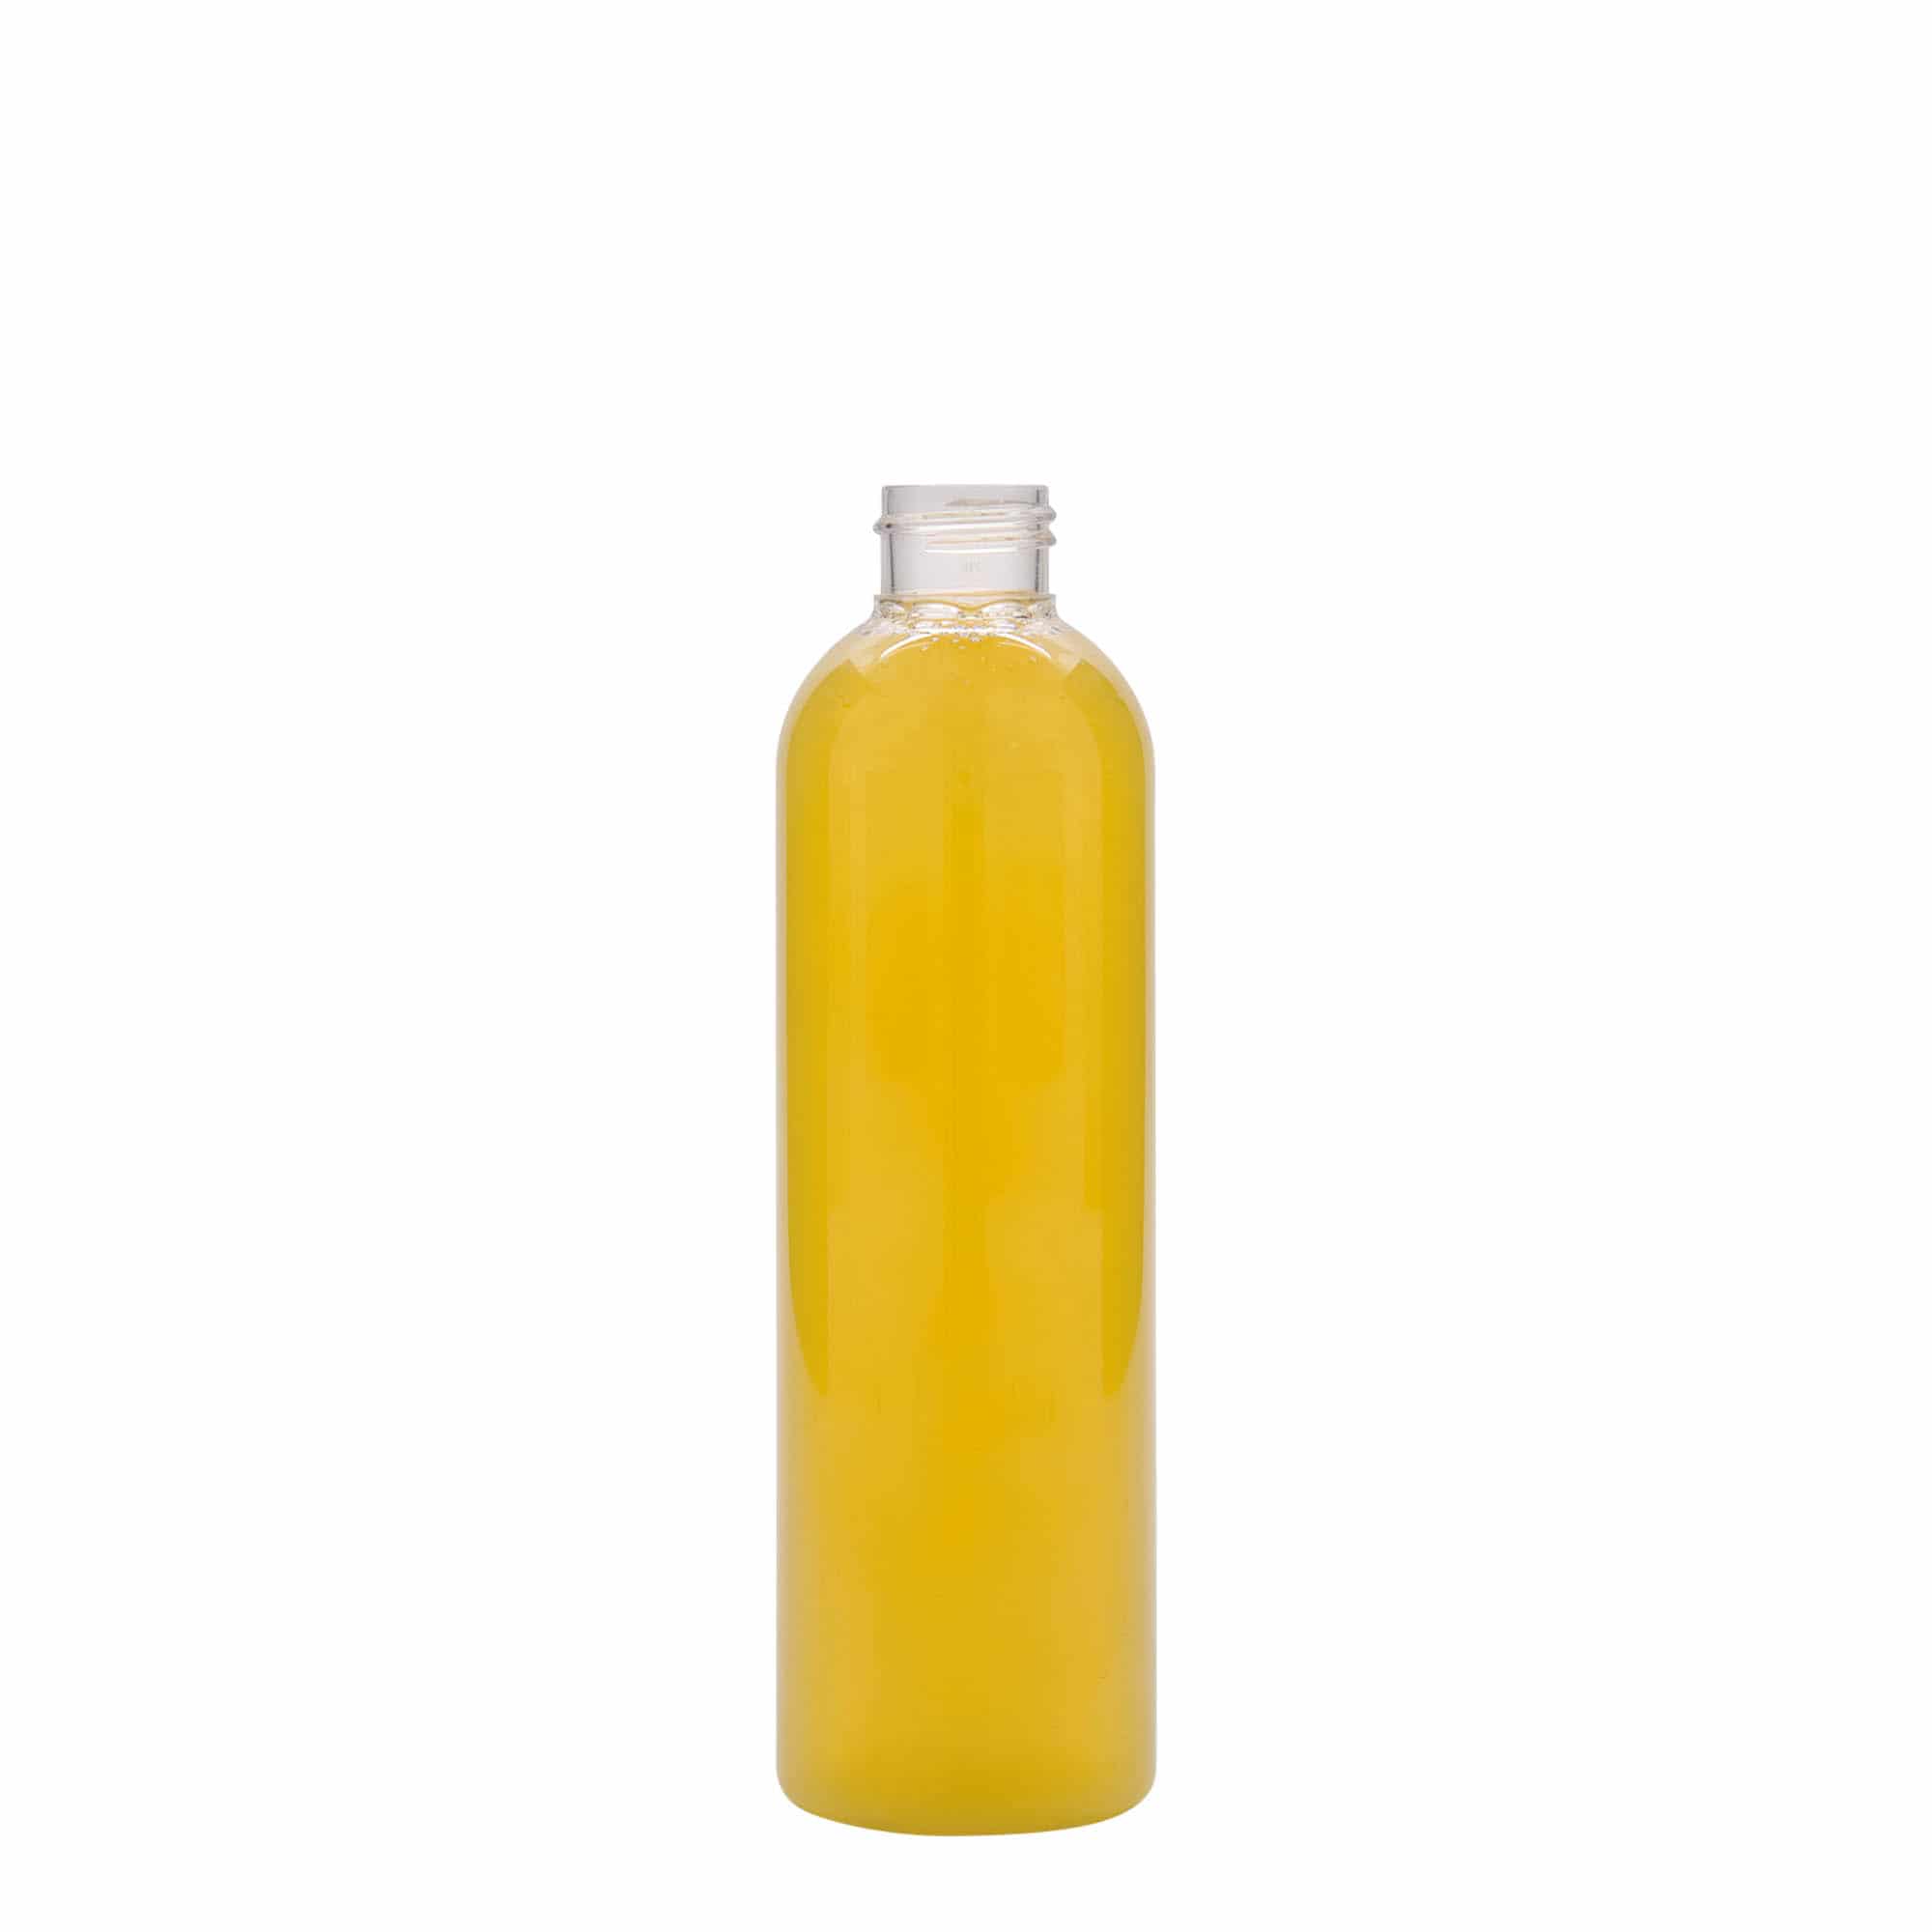 PET lahev 250 ml 'Pegasus', plast, ústí: GPI 20/410